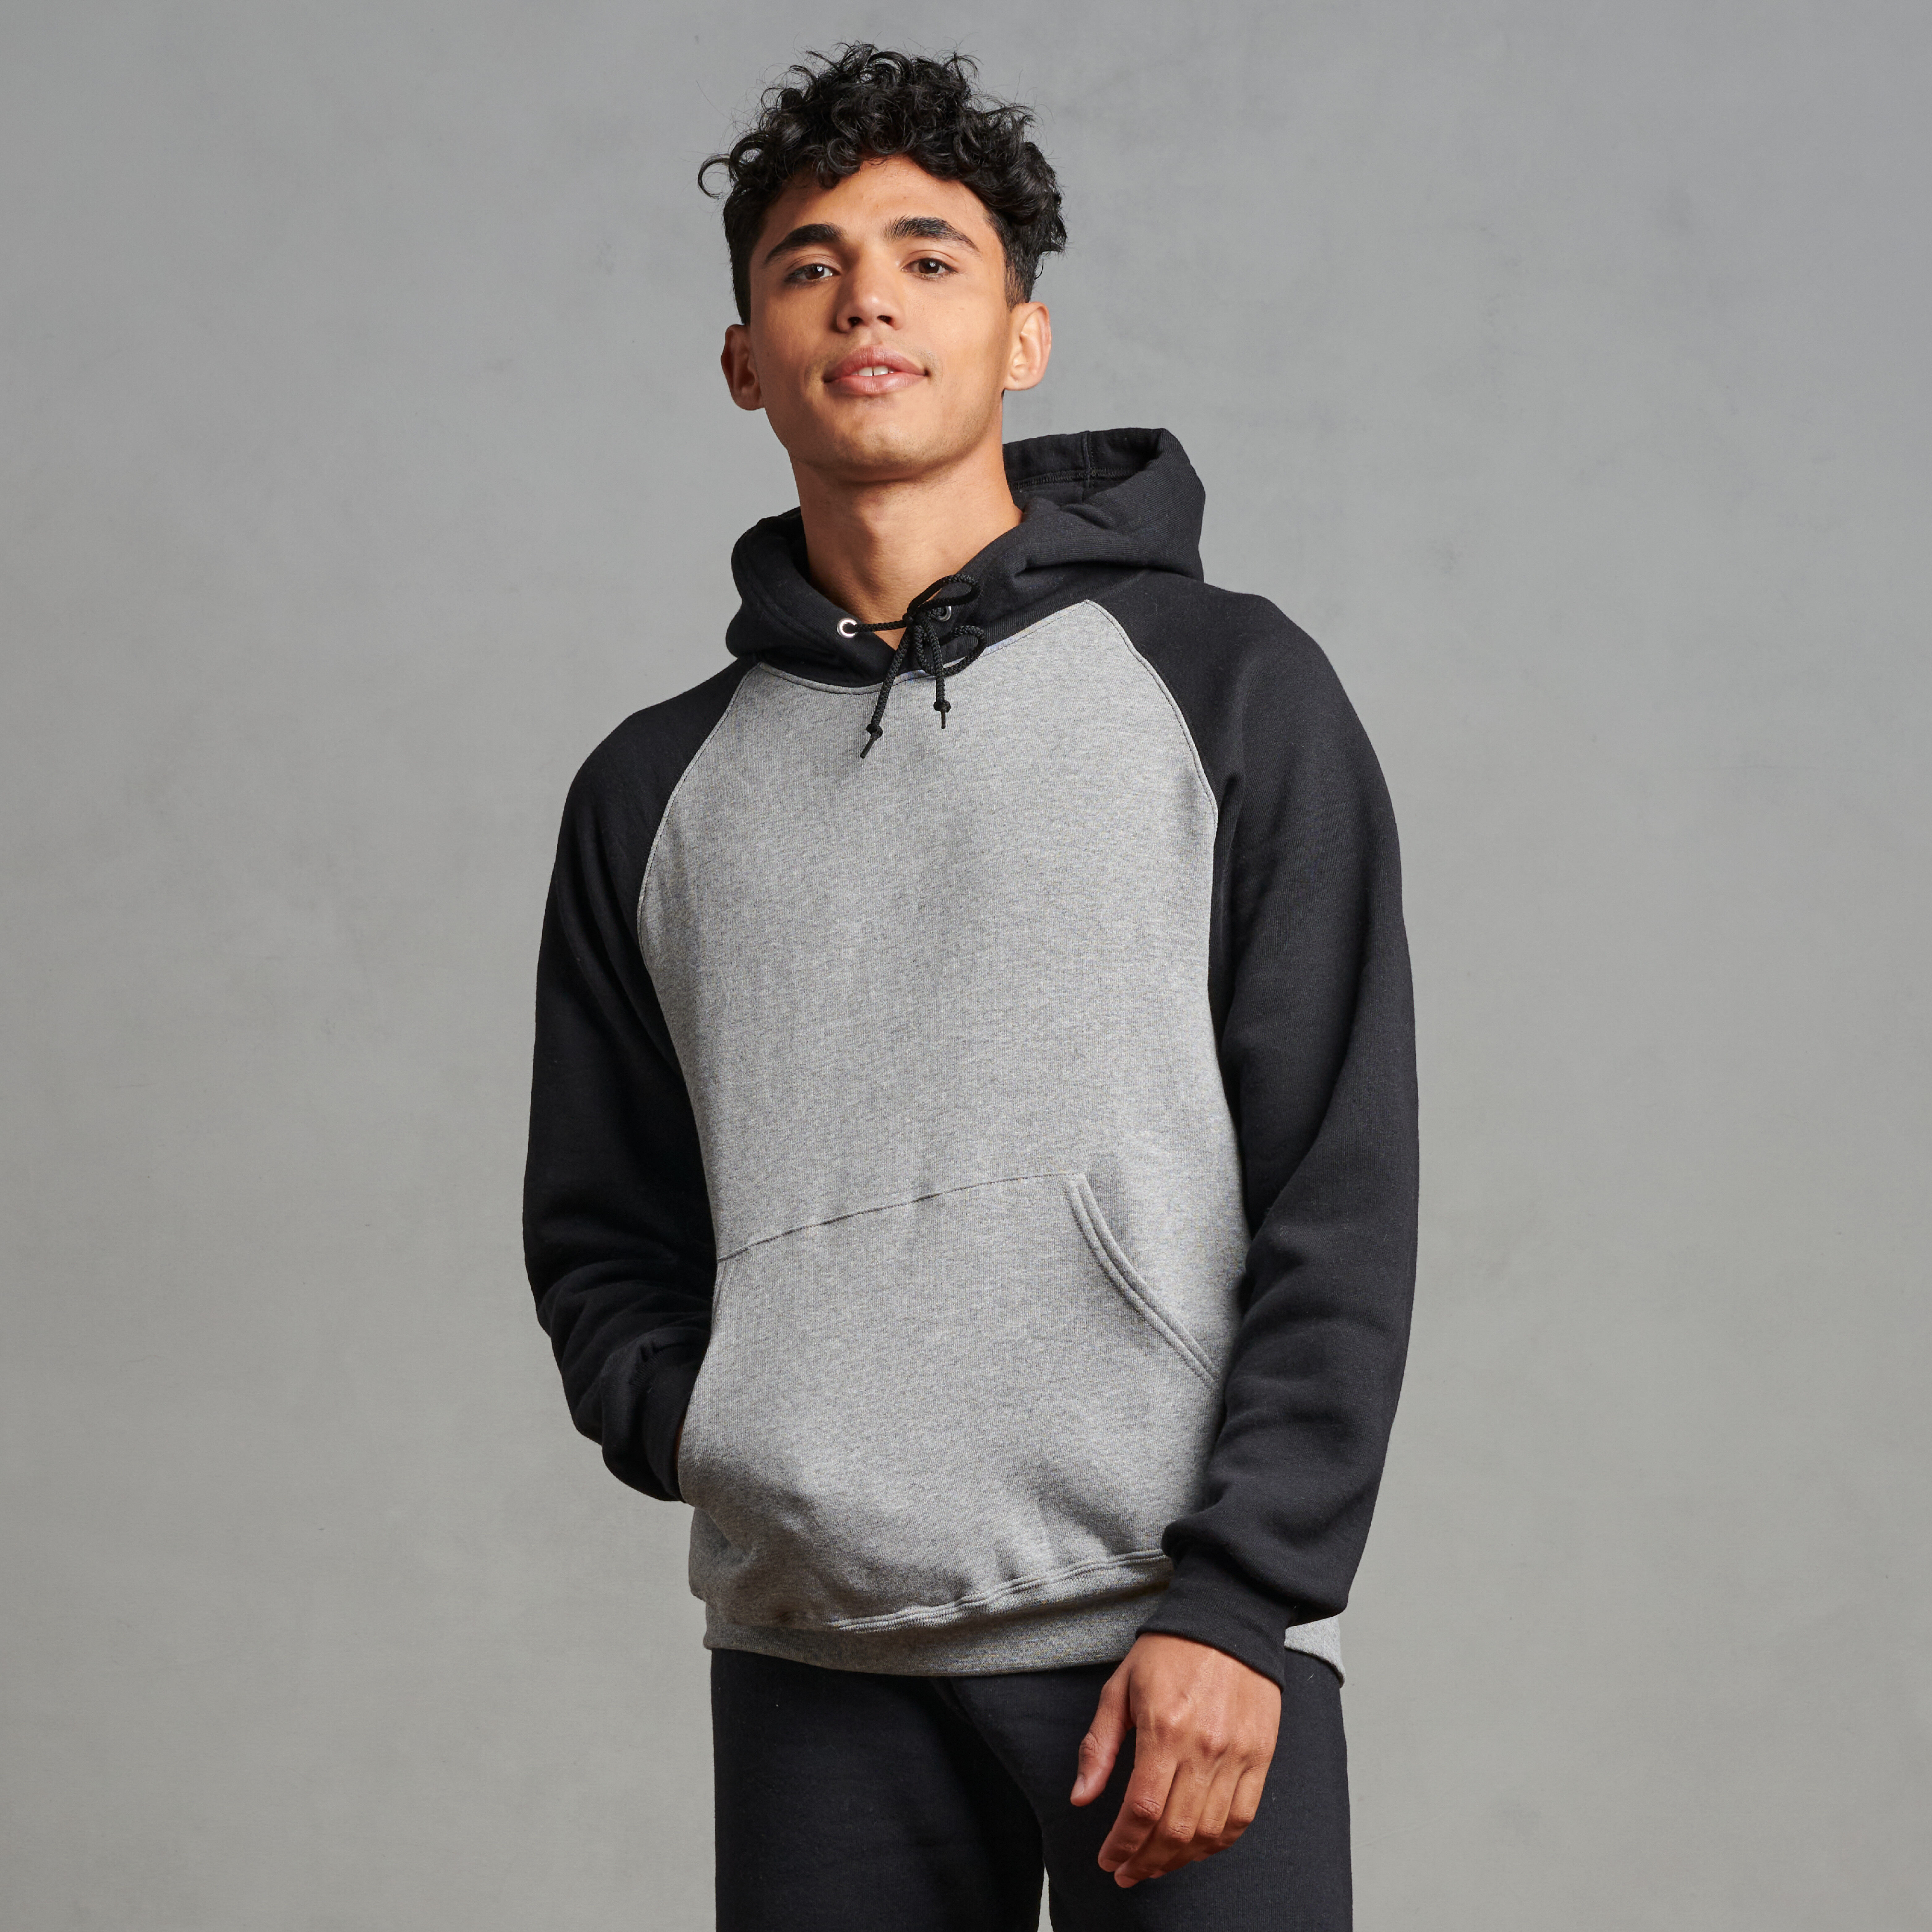 Men's Athletic Sweatshirts & Hoodies | Russell Athletic